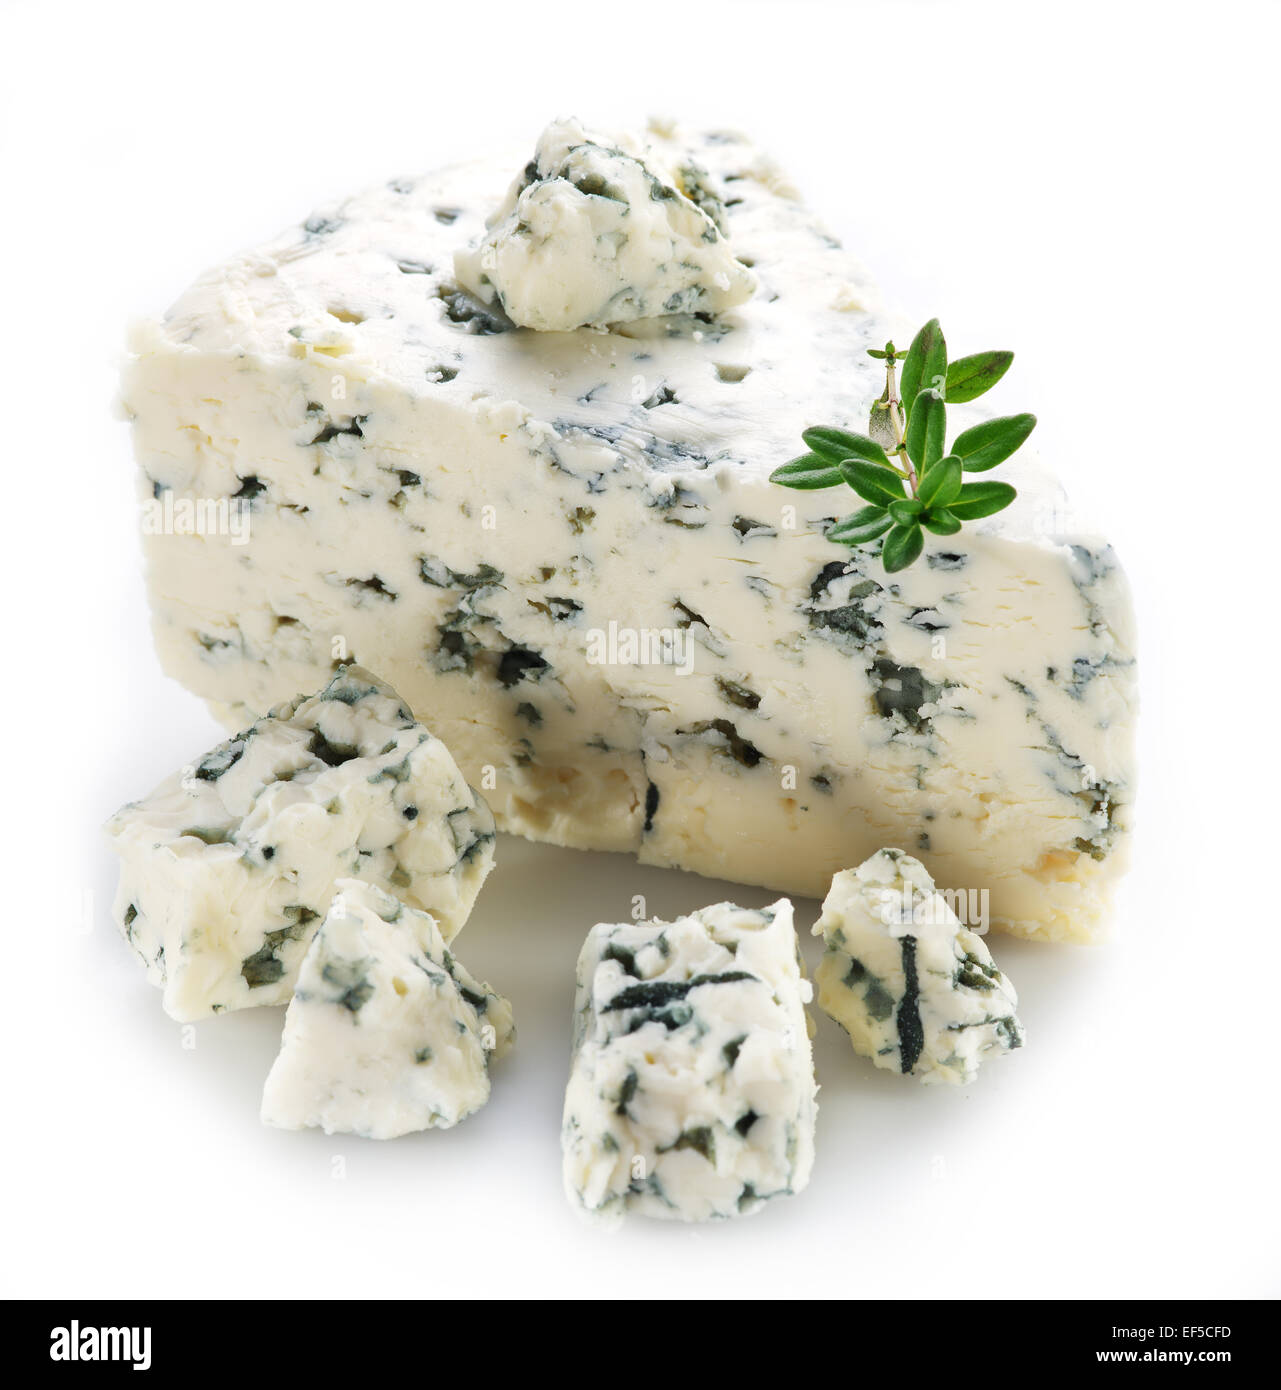 Tranches de fromage bleu danois sur fond blanc. Banque D'Images